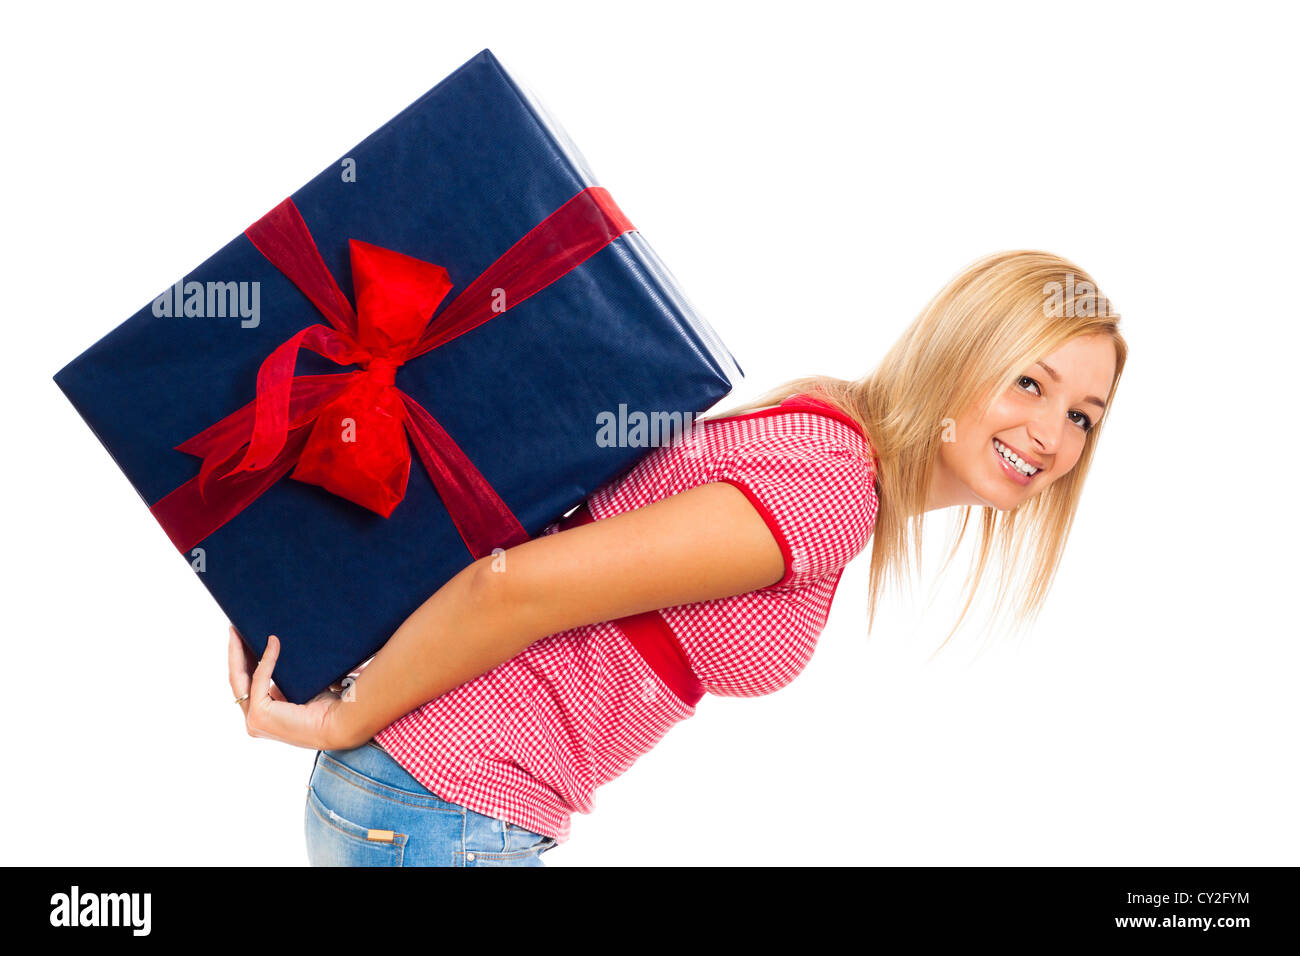 Young attractive blonde woman réalisation du grand bleu boîte cadeau, isolé sur fond blanc. Banque D'Images